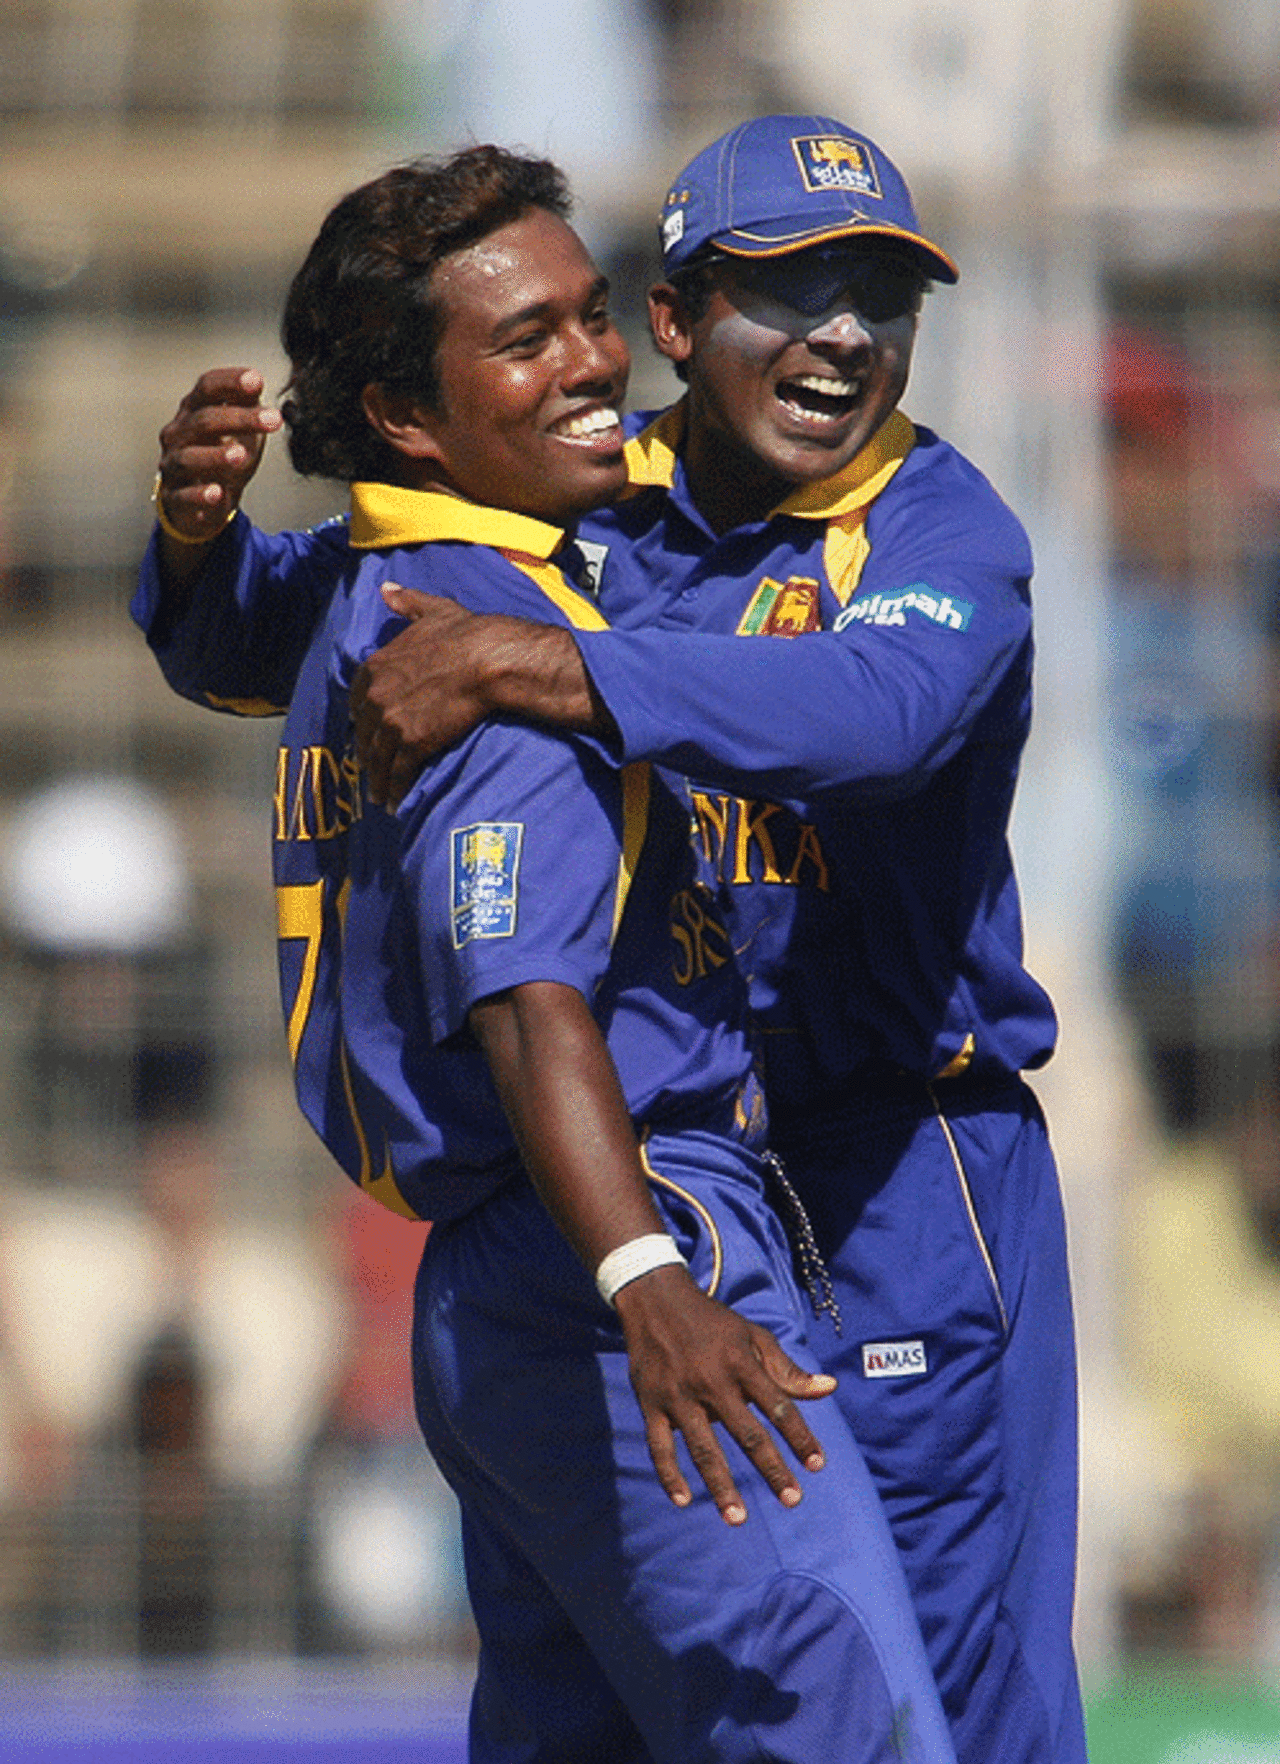 Malinga Bandara and Mahela Jayawardene celebrate the wicket of Sourav Ganguly, India v Sri Lanka, 3rd ODI, Margao, February 14, 2007